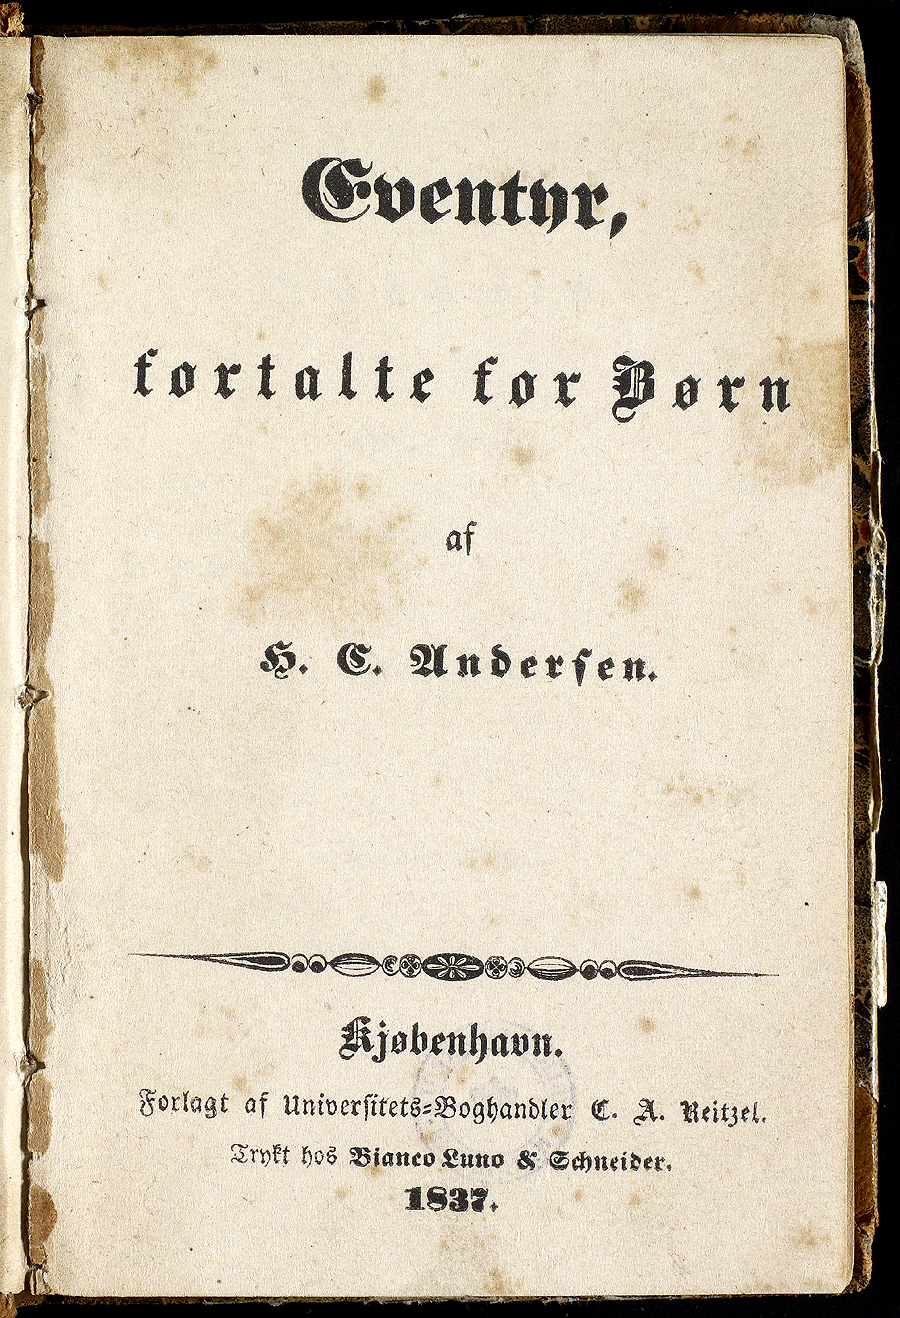 안데르센 원고 및 서신

안데르센(1805-1875)은「인어공주」,「미운 오리새끼」등을 쓴 세계적 아동문학 작가이다. 이 기록물은 안데르센의 원고와 서신 필사본으로 당대 문학사 연구에 귀중한 자료로 활용되고 있다. 덴마크 왕립도서관은 여러 곳에 흩어져 있던 기록물을 수집ㆍ보존하고 있다.